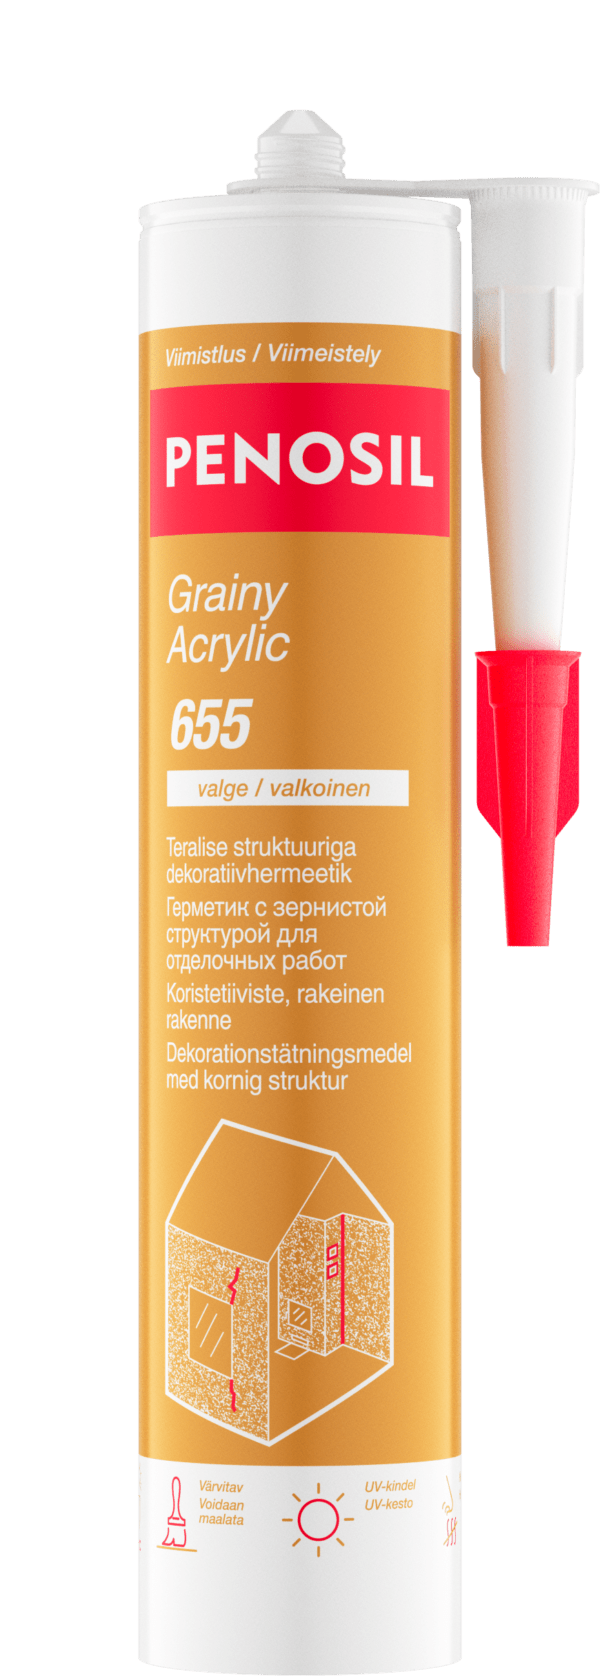 Penosil Grainy_Acrylc_655